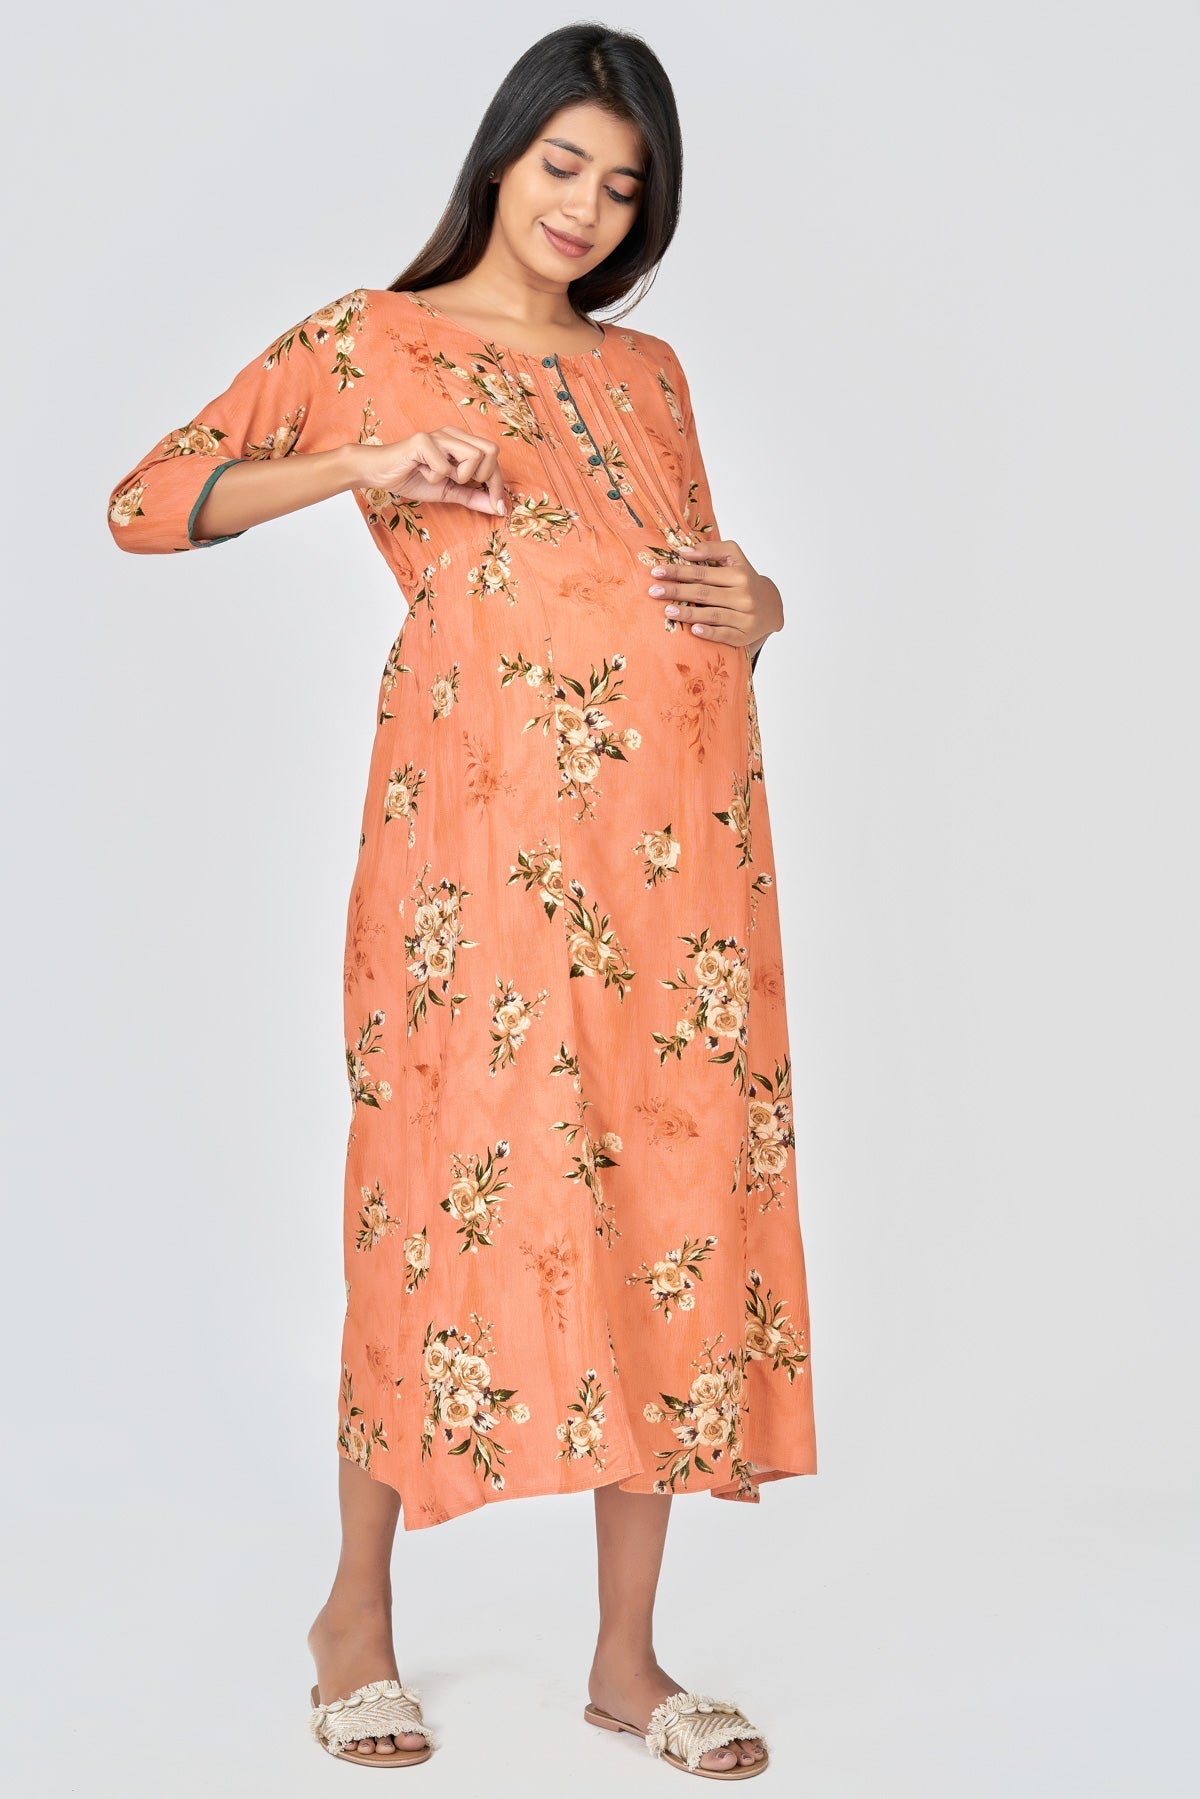 Khari Floral Printed Maternity Long Dress- Orange